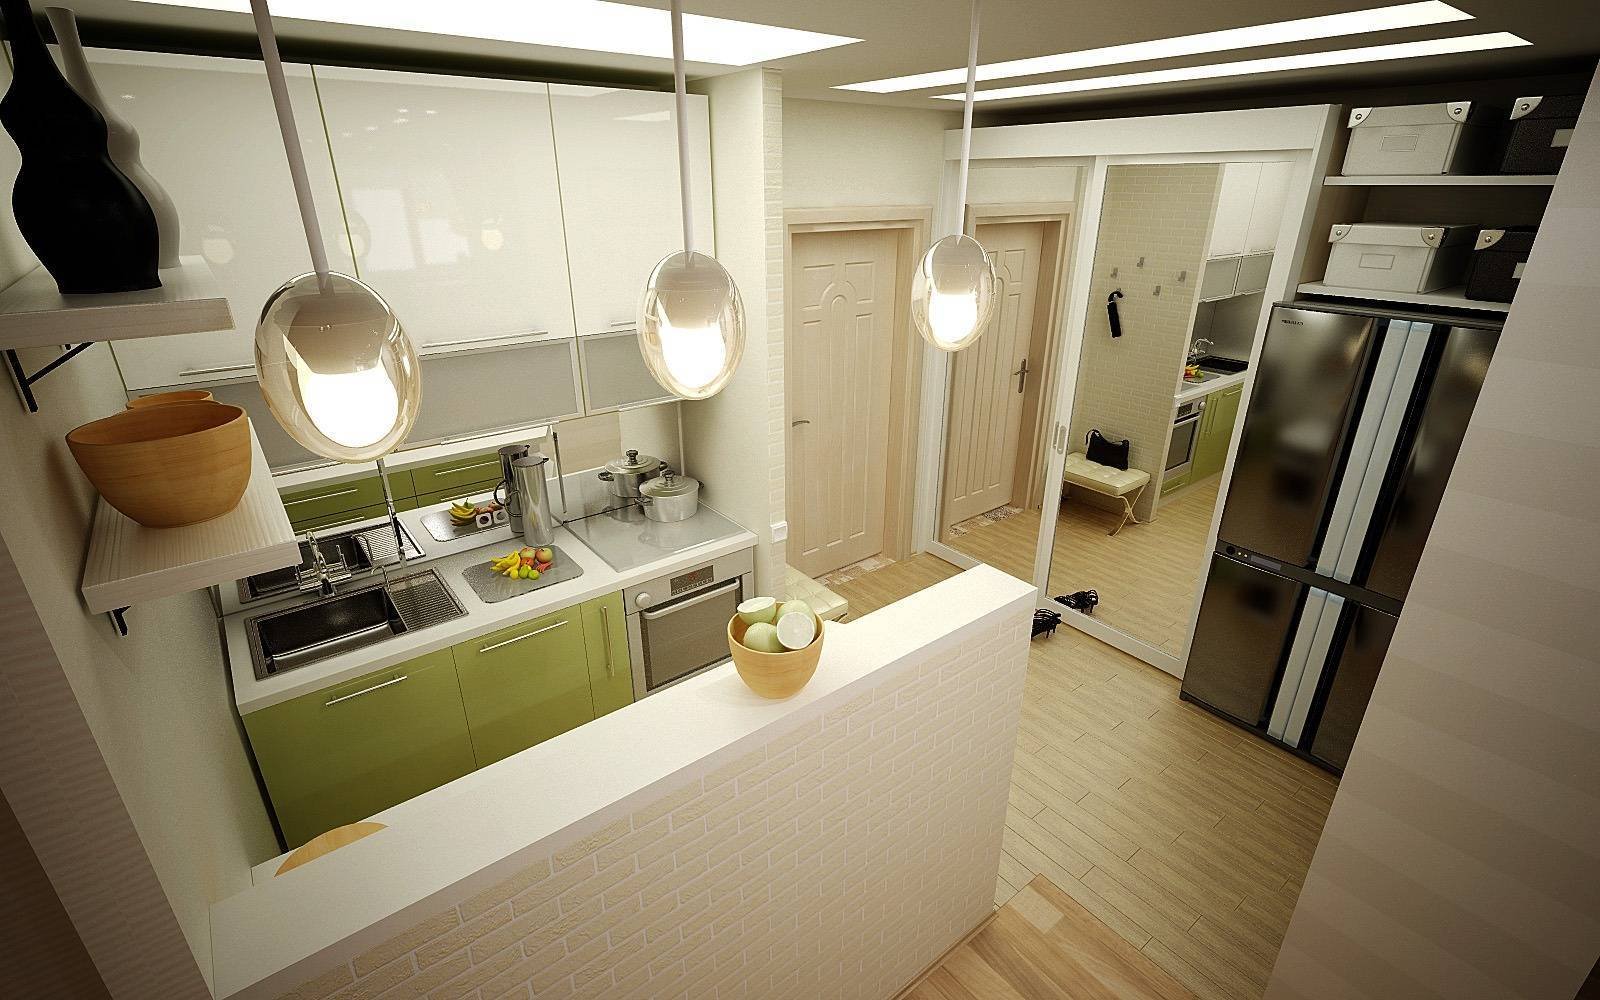 Перенос кухни в жилую комнату в 2022 году: согласование, как узаконить?